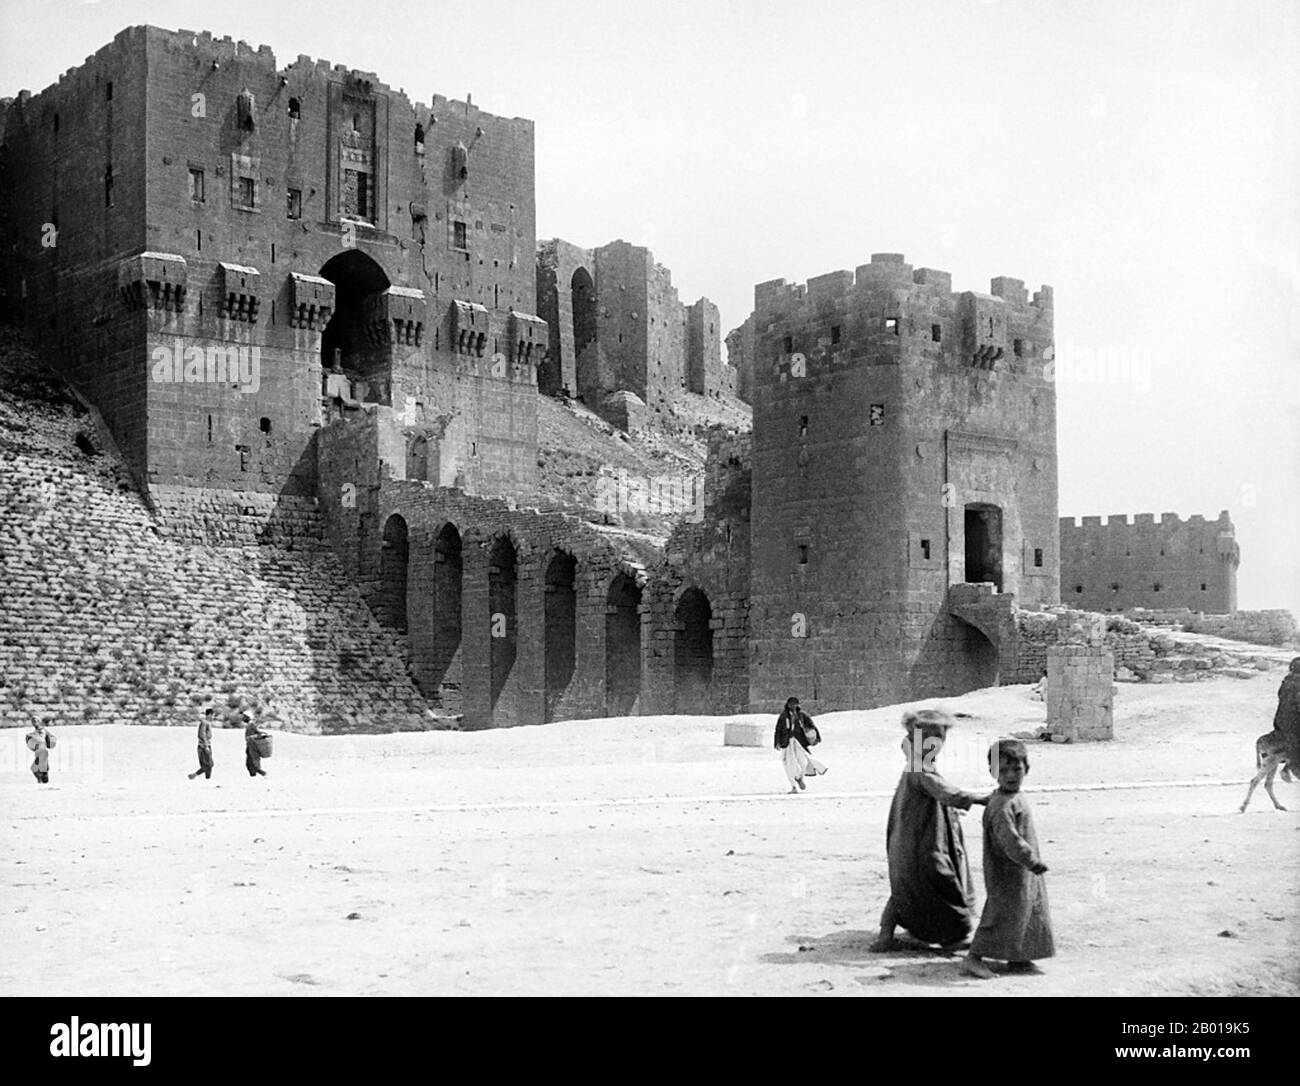 Syrie : la Citadelle d'Alep (Haleb), c. 1900. La Citadelle d'Alep est un grand palais médiéval fortifié au centre de la vieille ville d'Alep, au nord de la Syrie. L'un des plus anciens et des plus grands châteaux du monde, l'utilisation de la colline de la Citadelle remonte au moins au milieu du millénaire 3rd avant notre ère. Par la suite occupée par de nombreuses civilisations telles que les Grecs, les Byzantins, les Ayyubides et les Mamluks, la majorité de la construction telle qu'elle est aujourd'hui est considérée comme provenant de la période Ayyubid. Banque D'Images